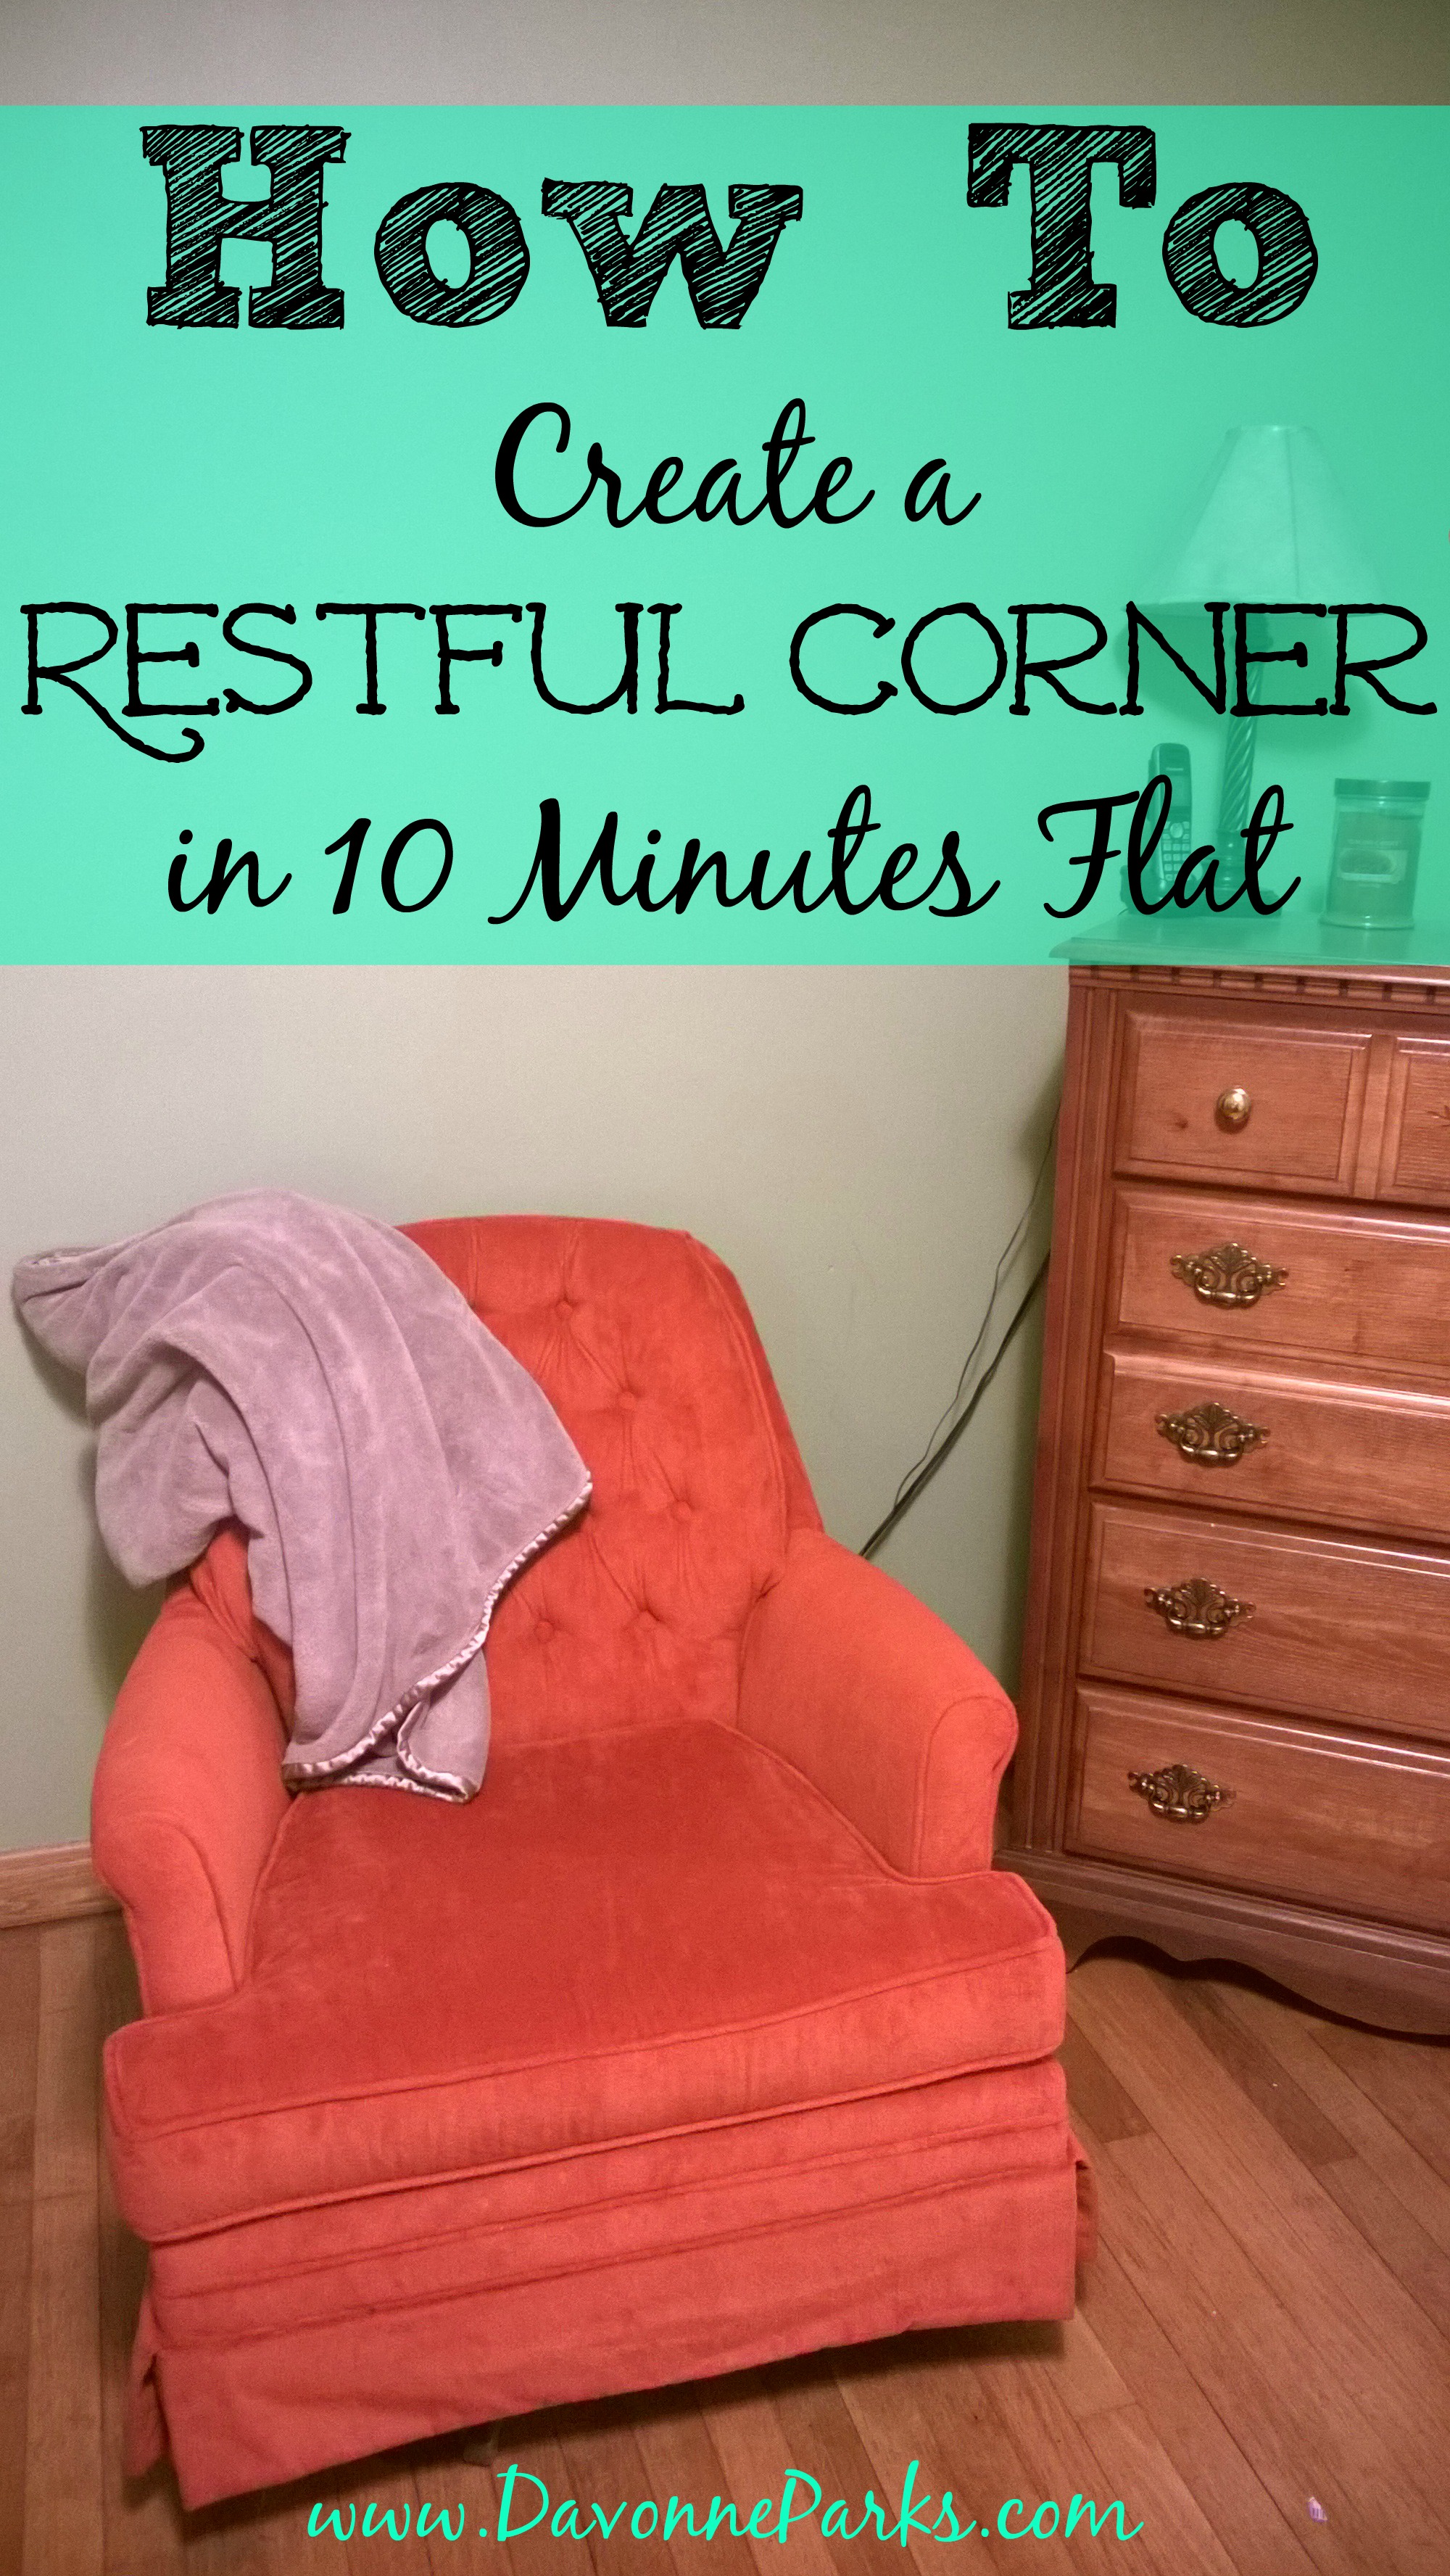 Create a Restful Corner in 10 Minutes Flat